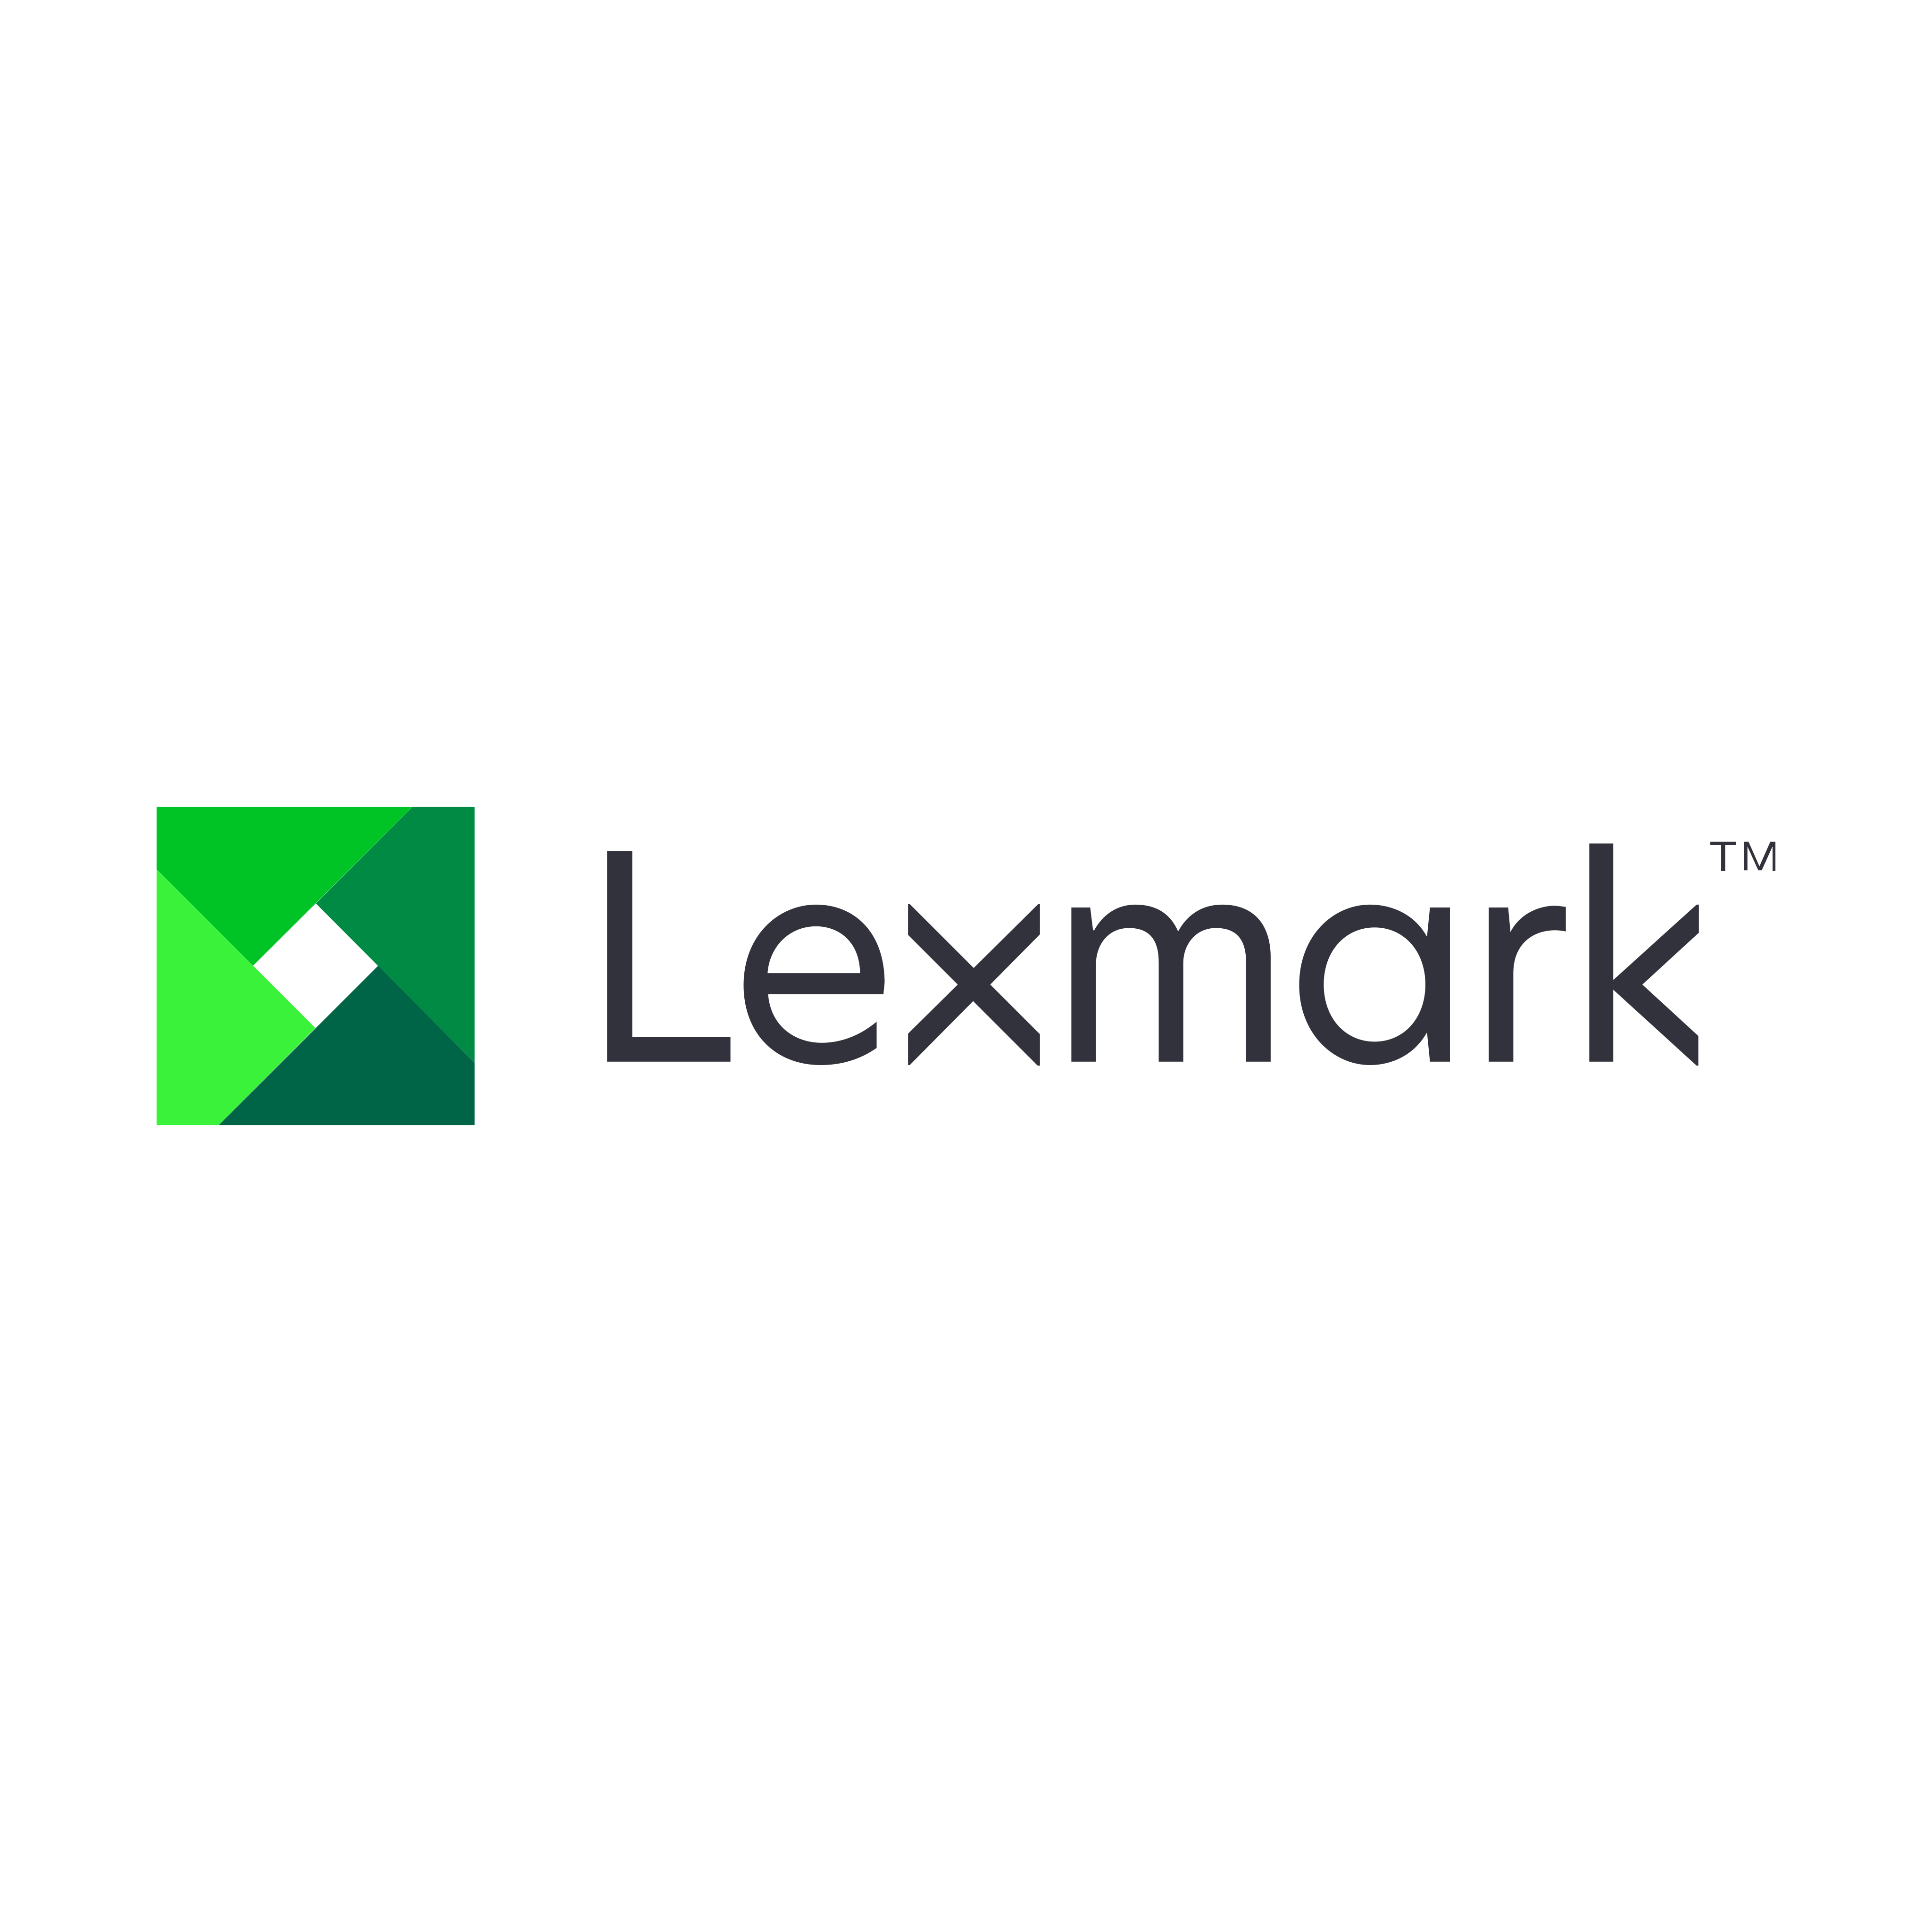 lexmark logo 0 - Lexmark Logo